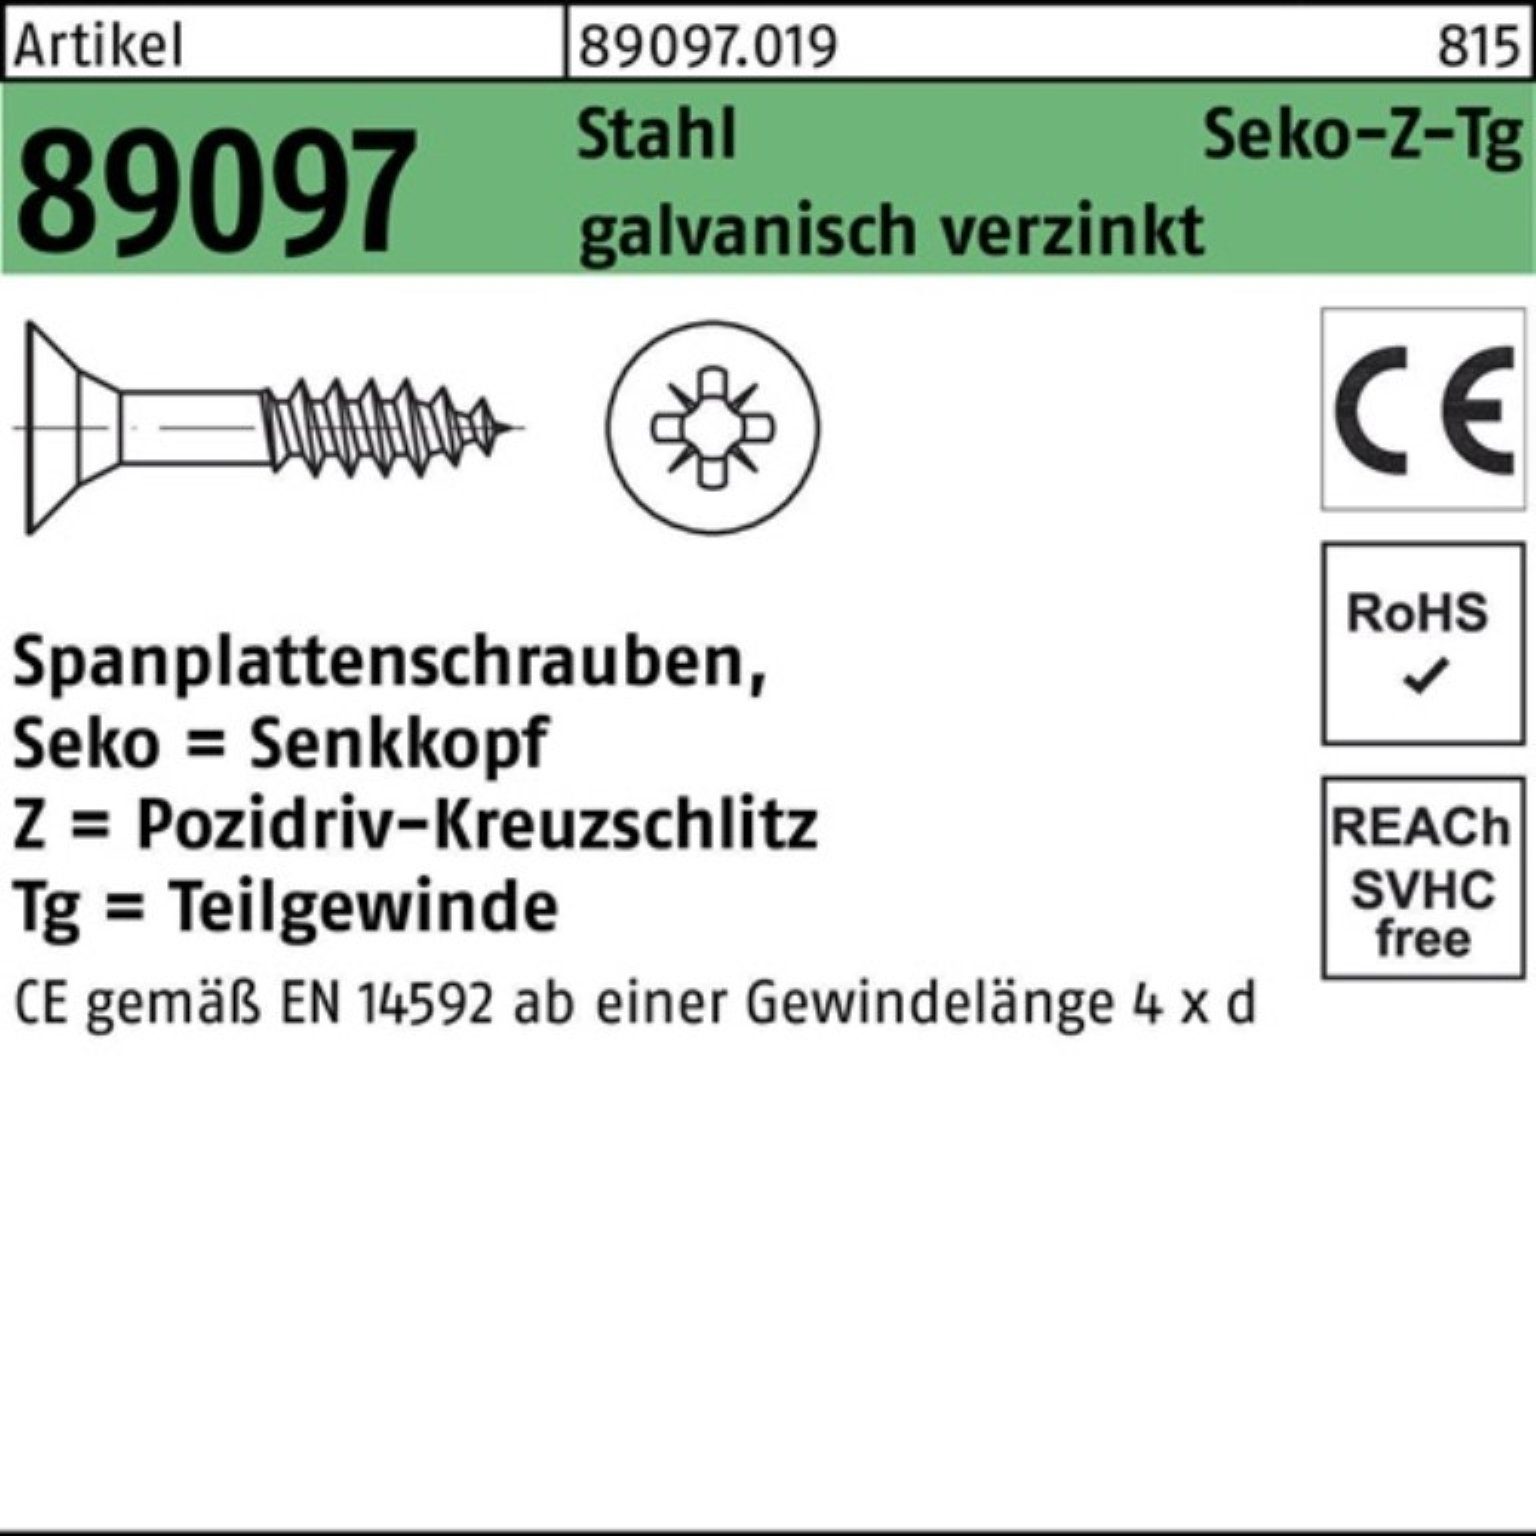 Reyher Spanplattenschraube Spanplattenschraube Pack 3,5x45/27-Z Stahl g SEKO PZ TG R 89097 1000er